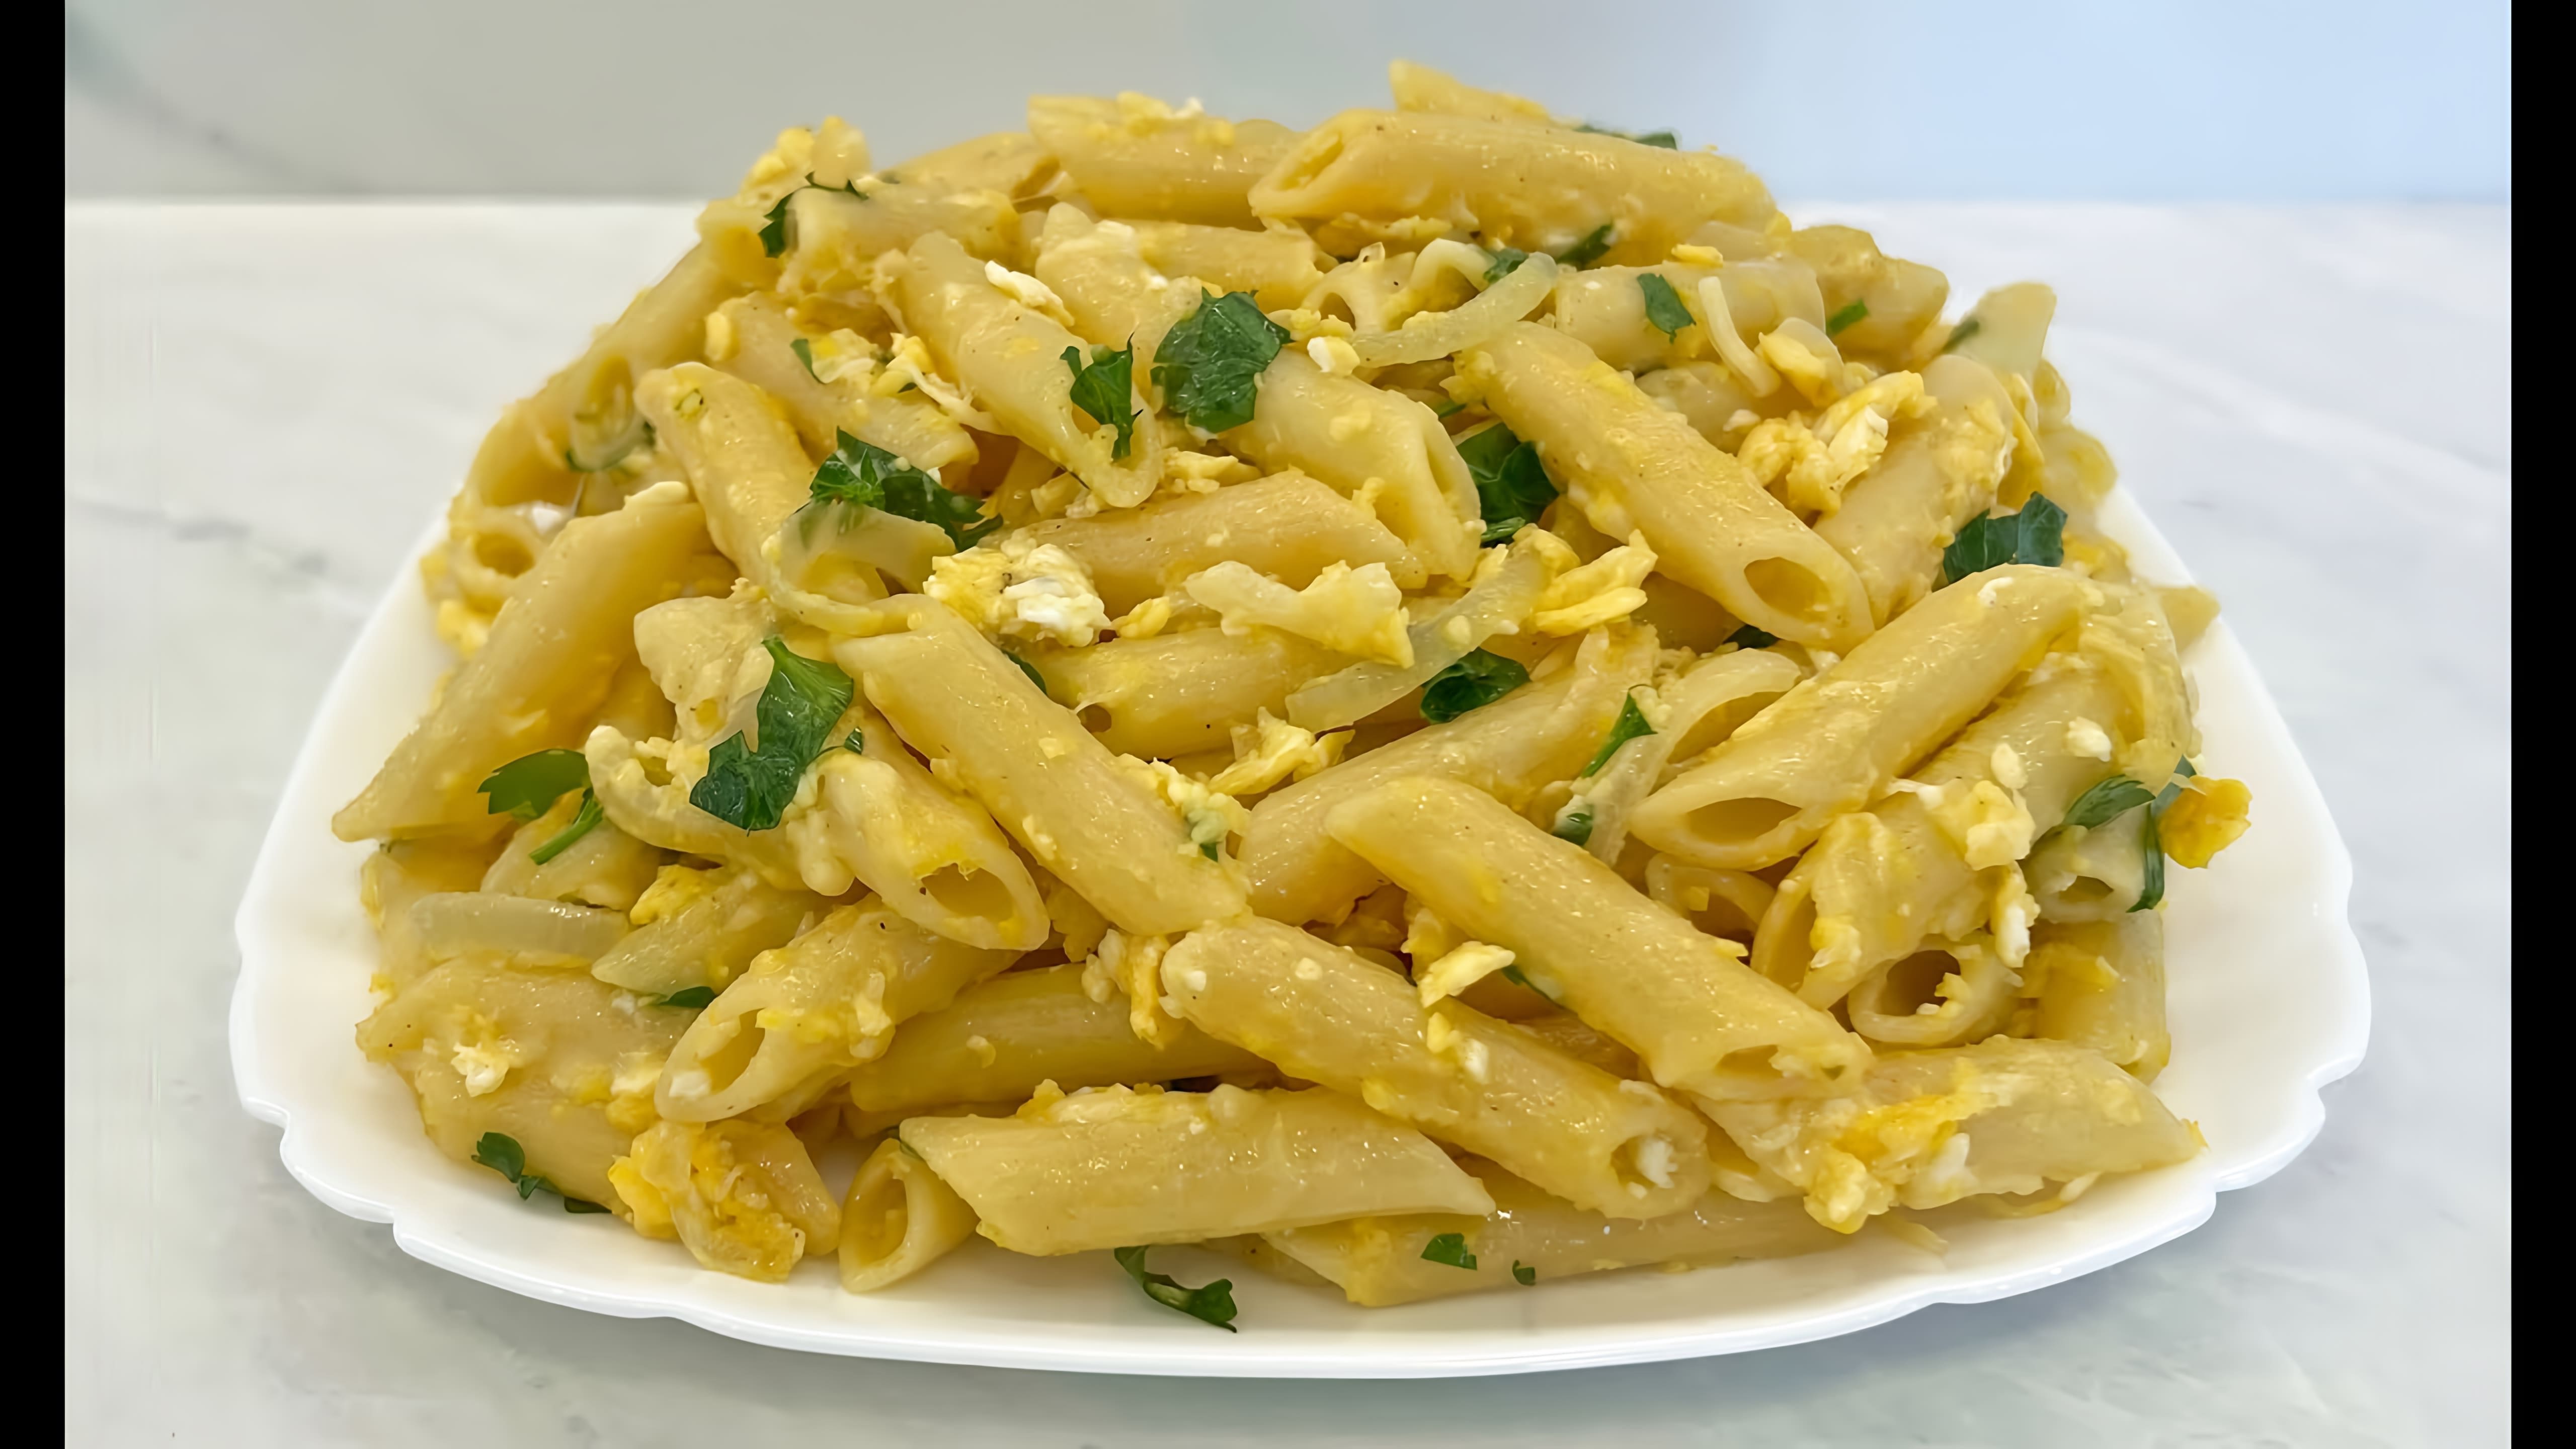 В этом видео демонстрируется простой и быстрый рецепт приготовления макарон с яйцами